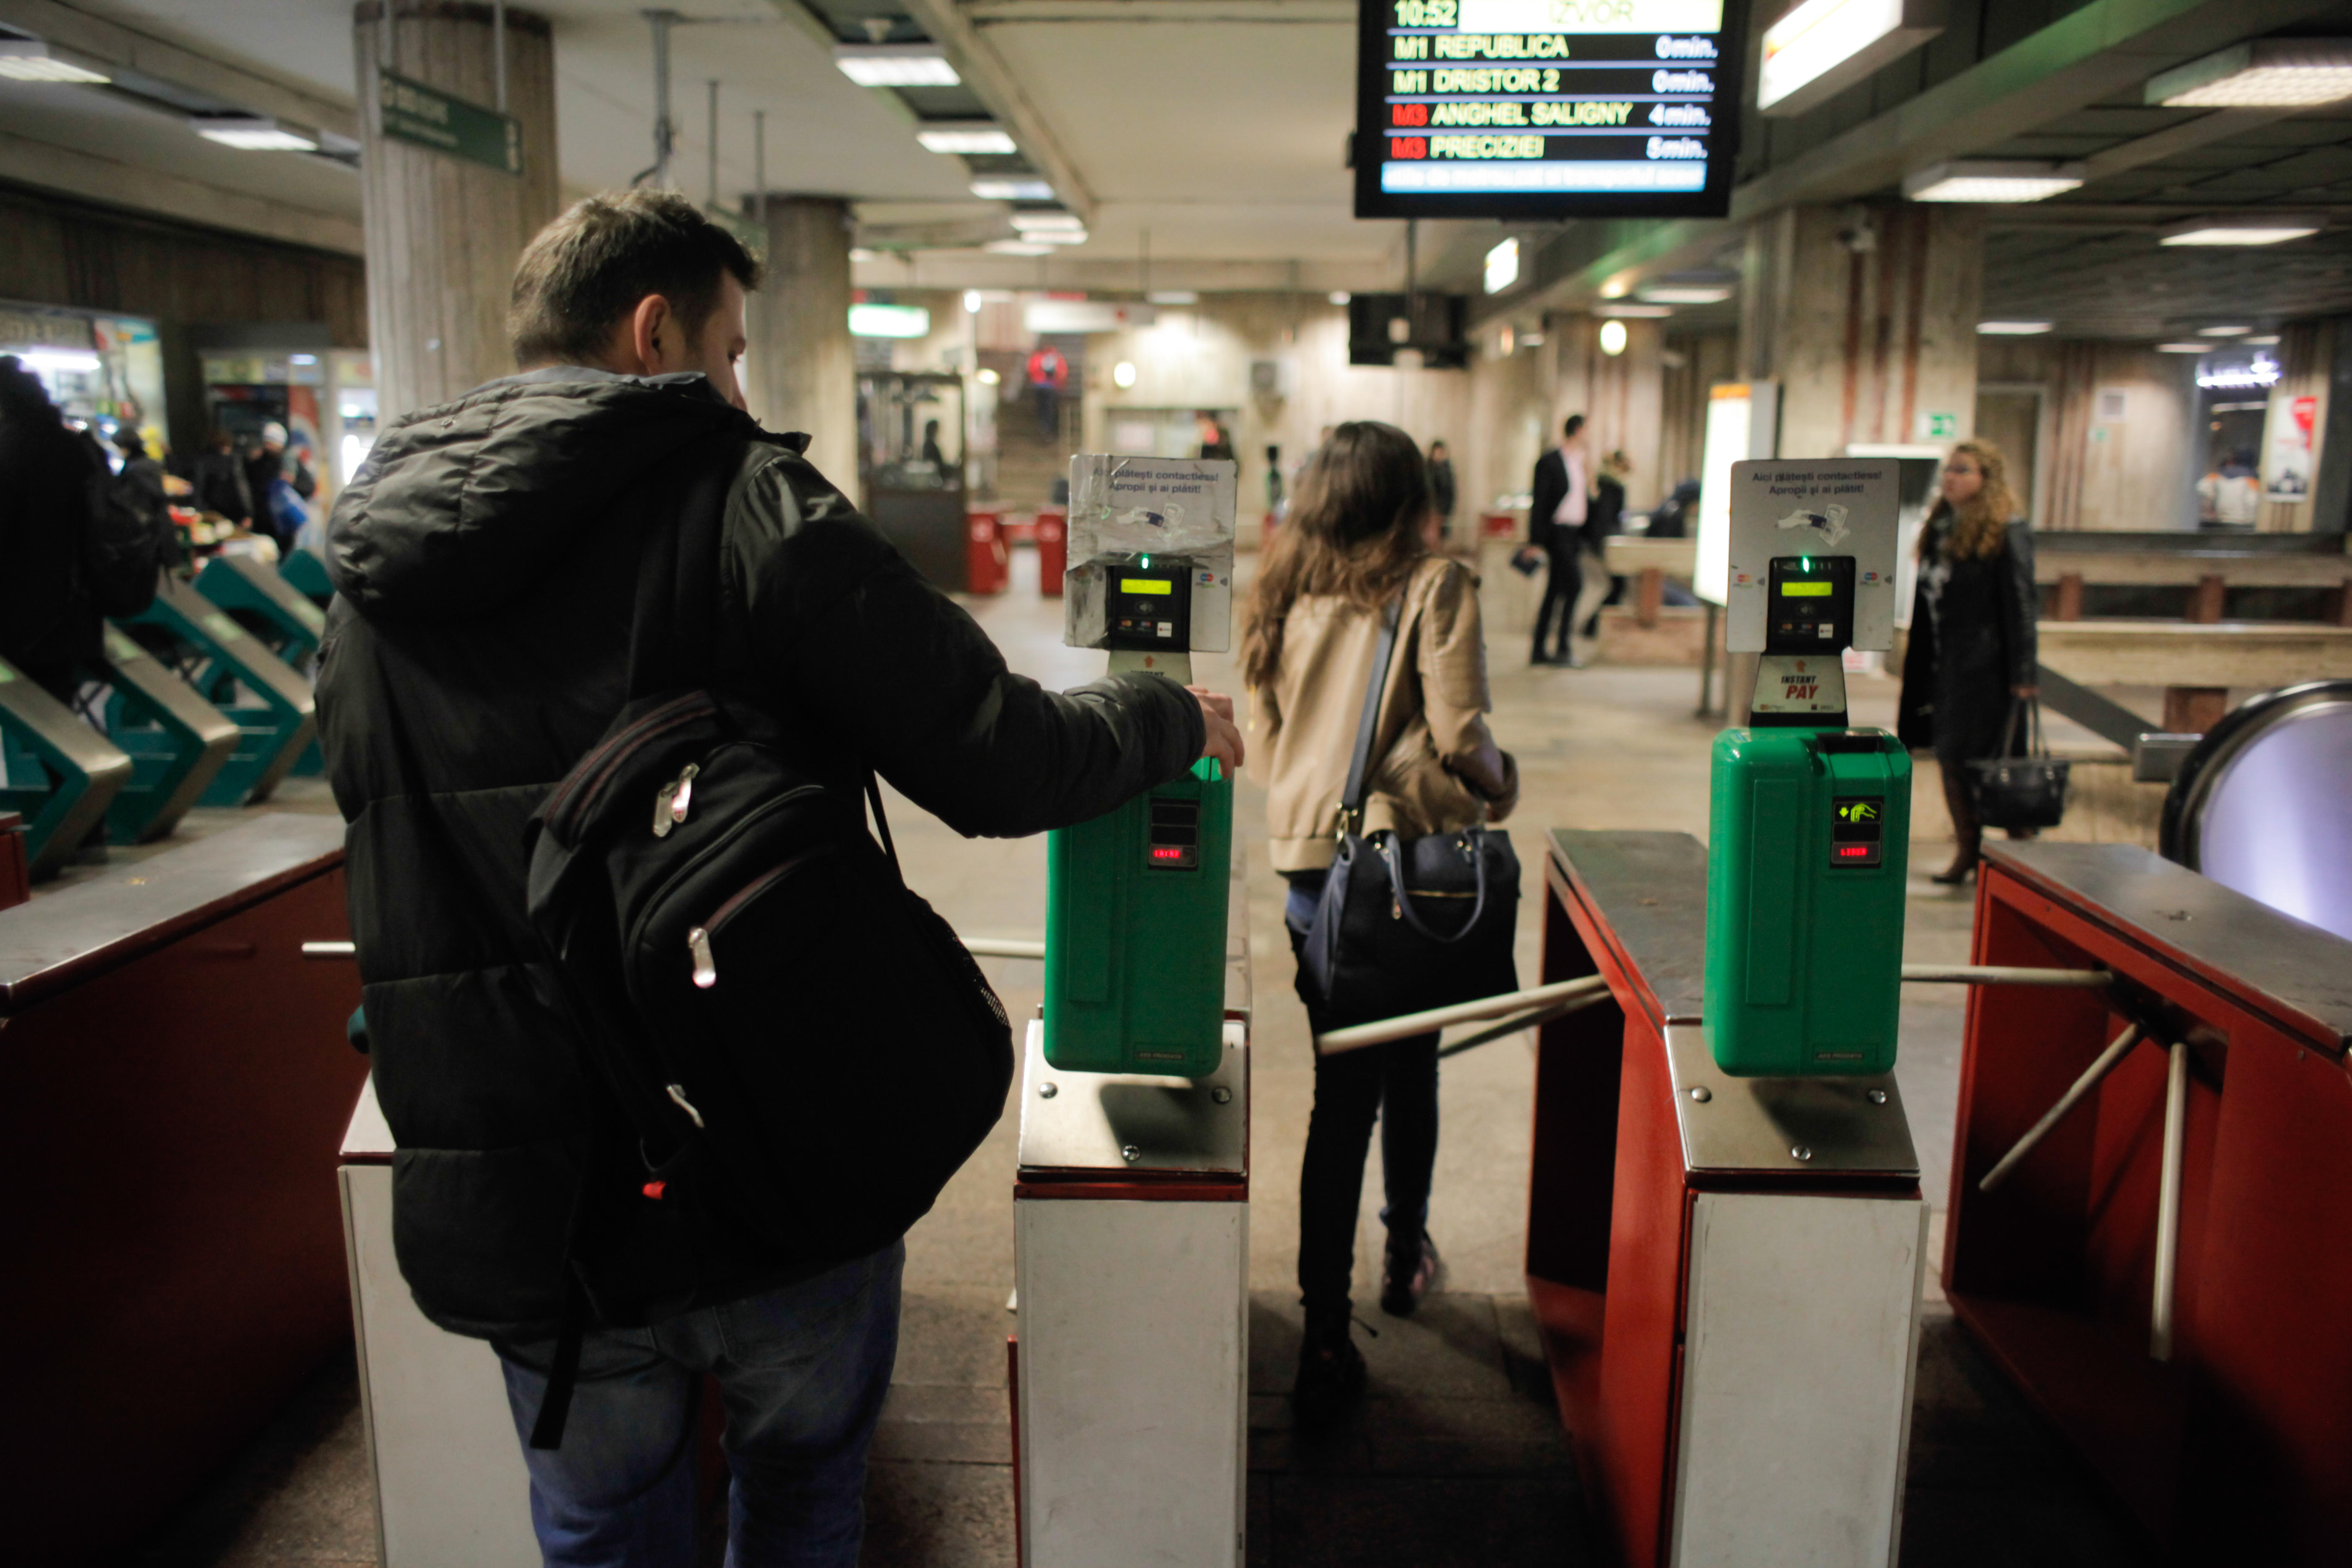 Circulatia la statia de metrou Berceni, reluata dupa mai bine de o ora. Alarma privind un colet suspect a fost falsa